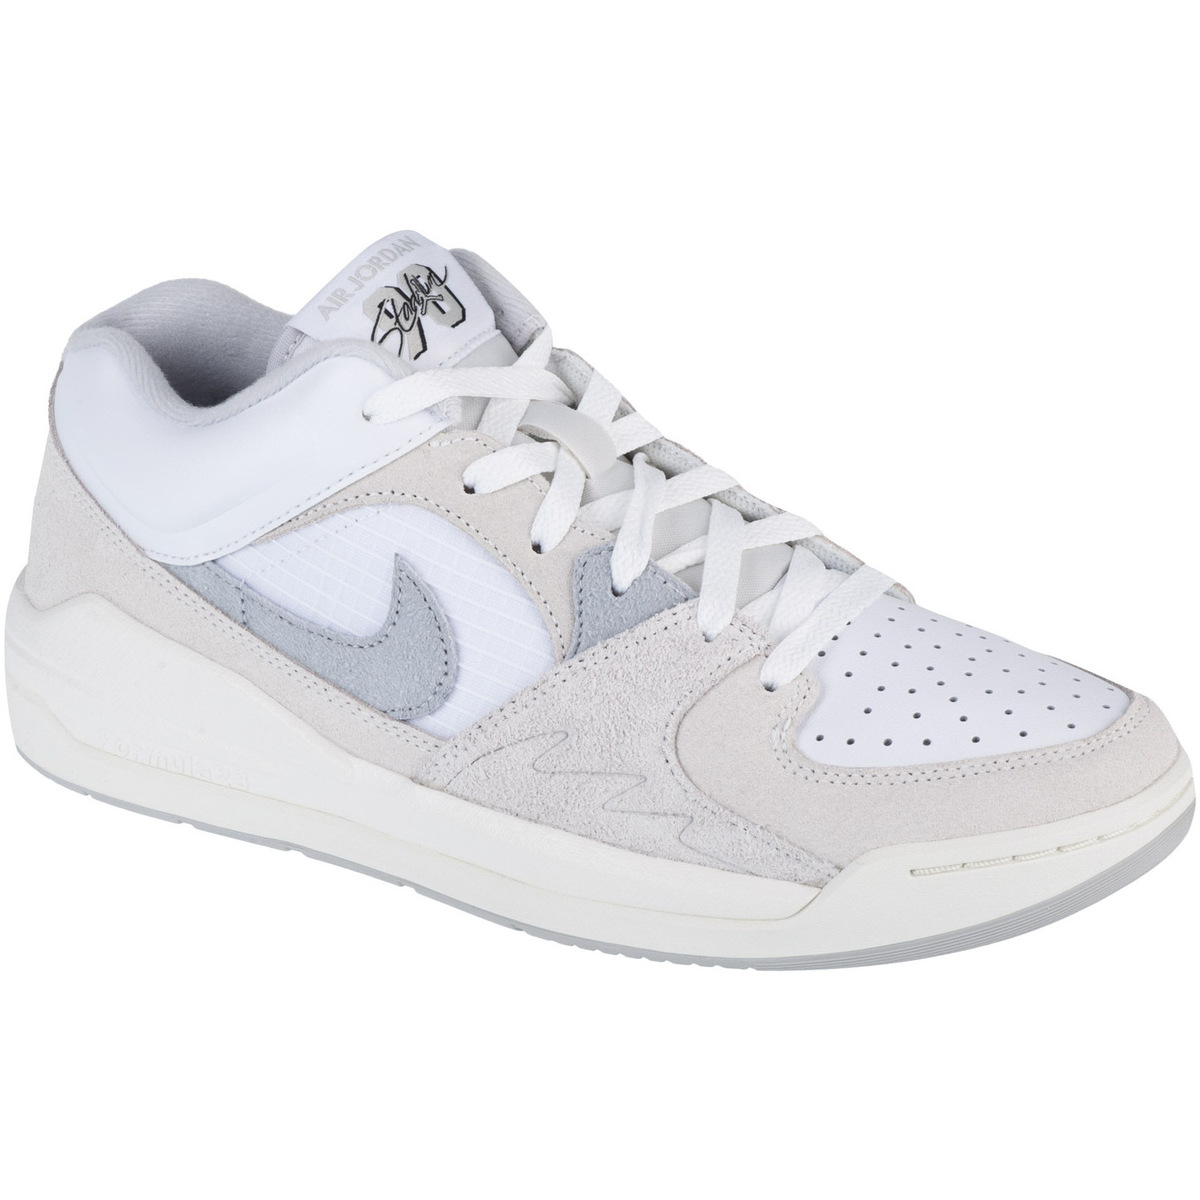 Παπούτσια του Μπάσκετ Nike Air Jordan Stadium 90